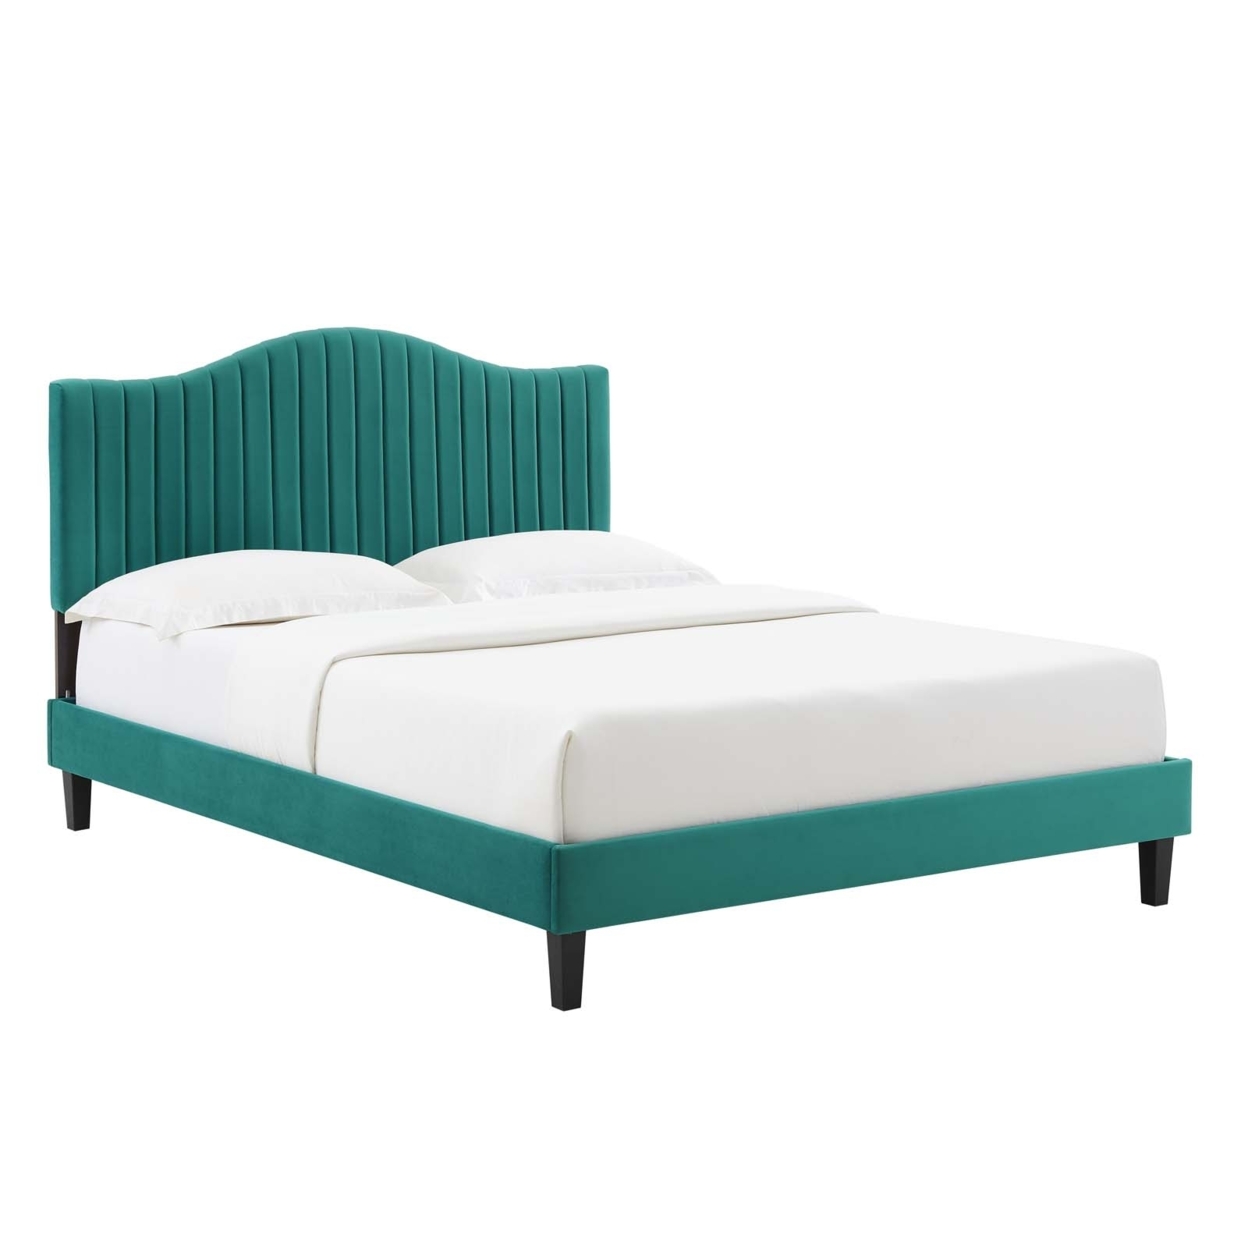 Full Size Platform Bed, Teal Green Velvet, Camelback Design Headboard